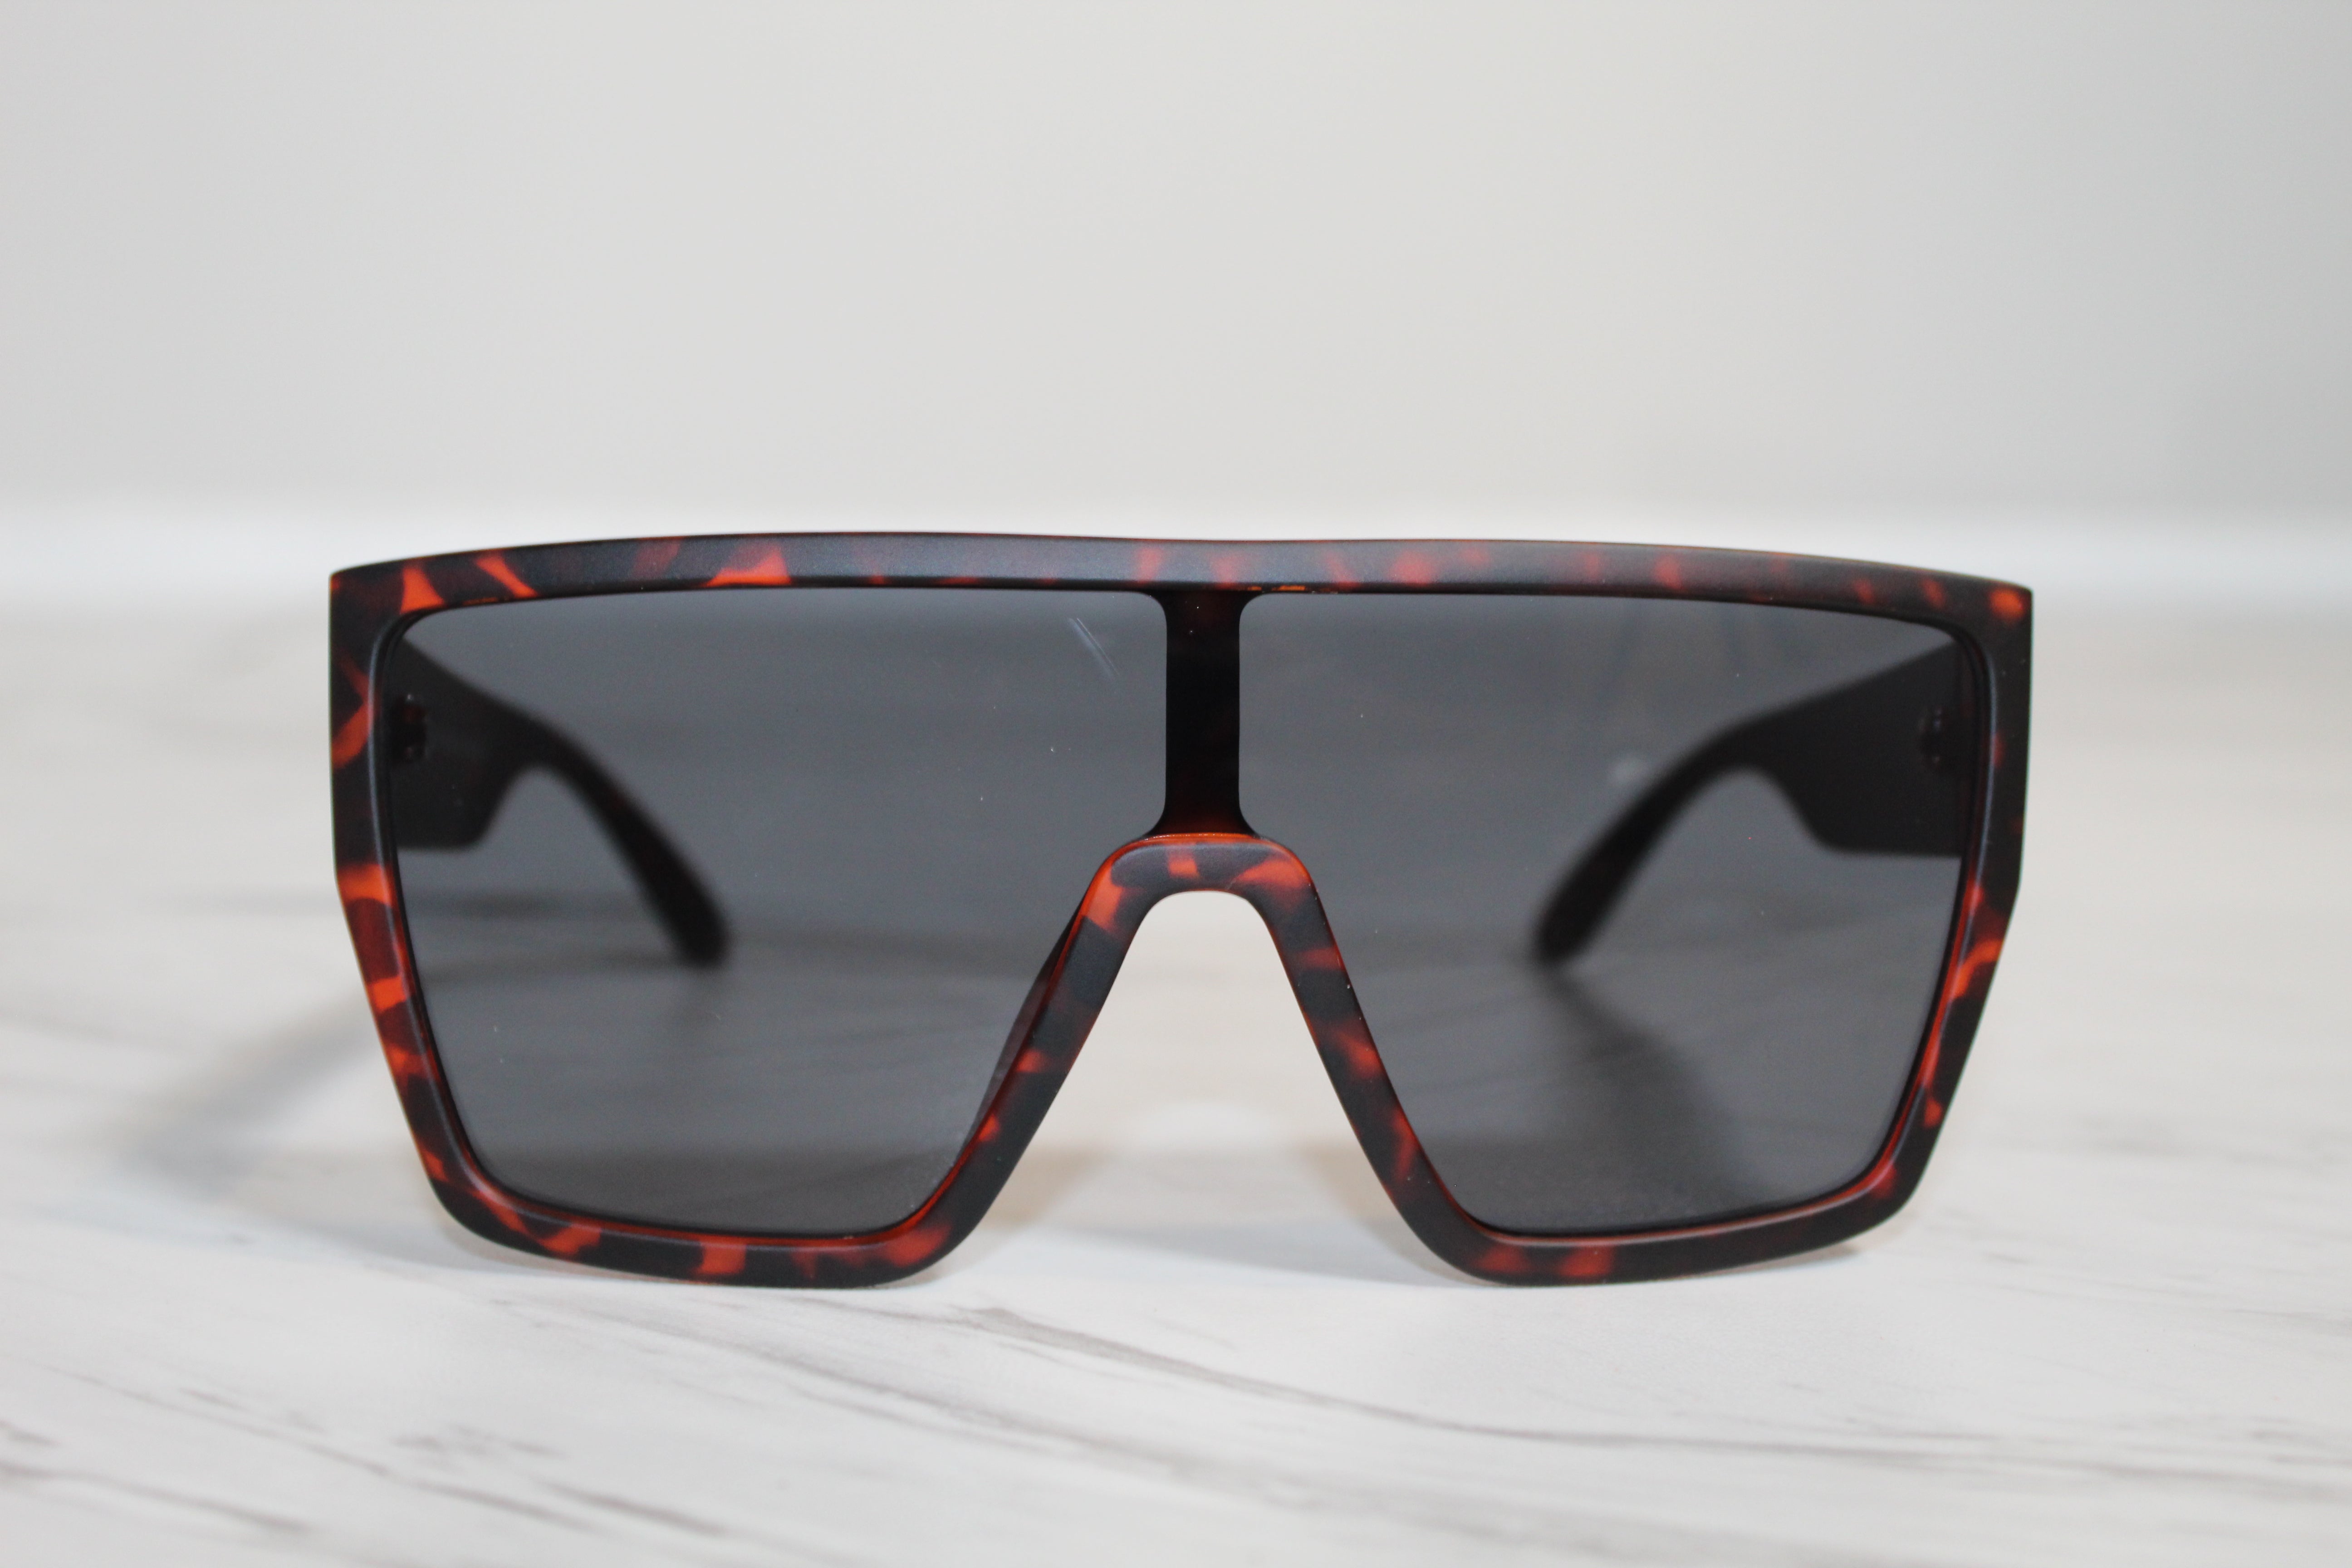 Retro Sunglasses - Women's Sunglasses - Cheetah